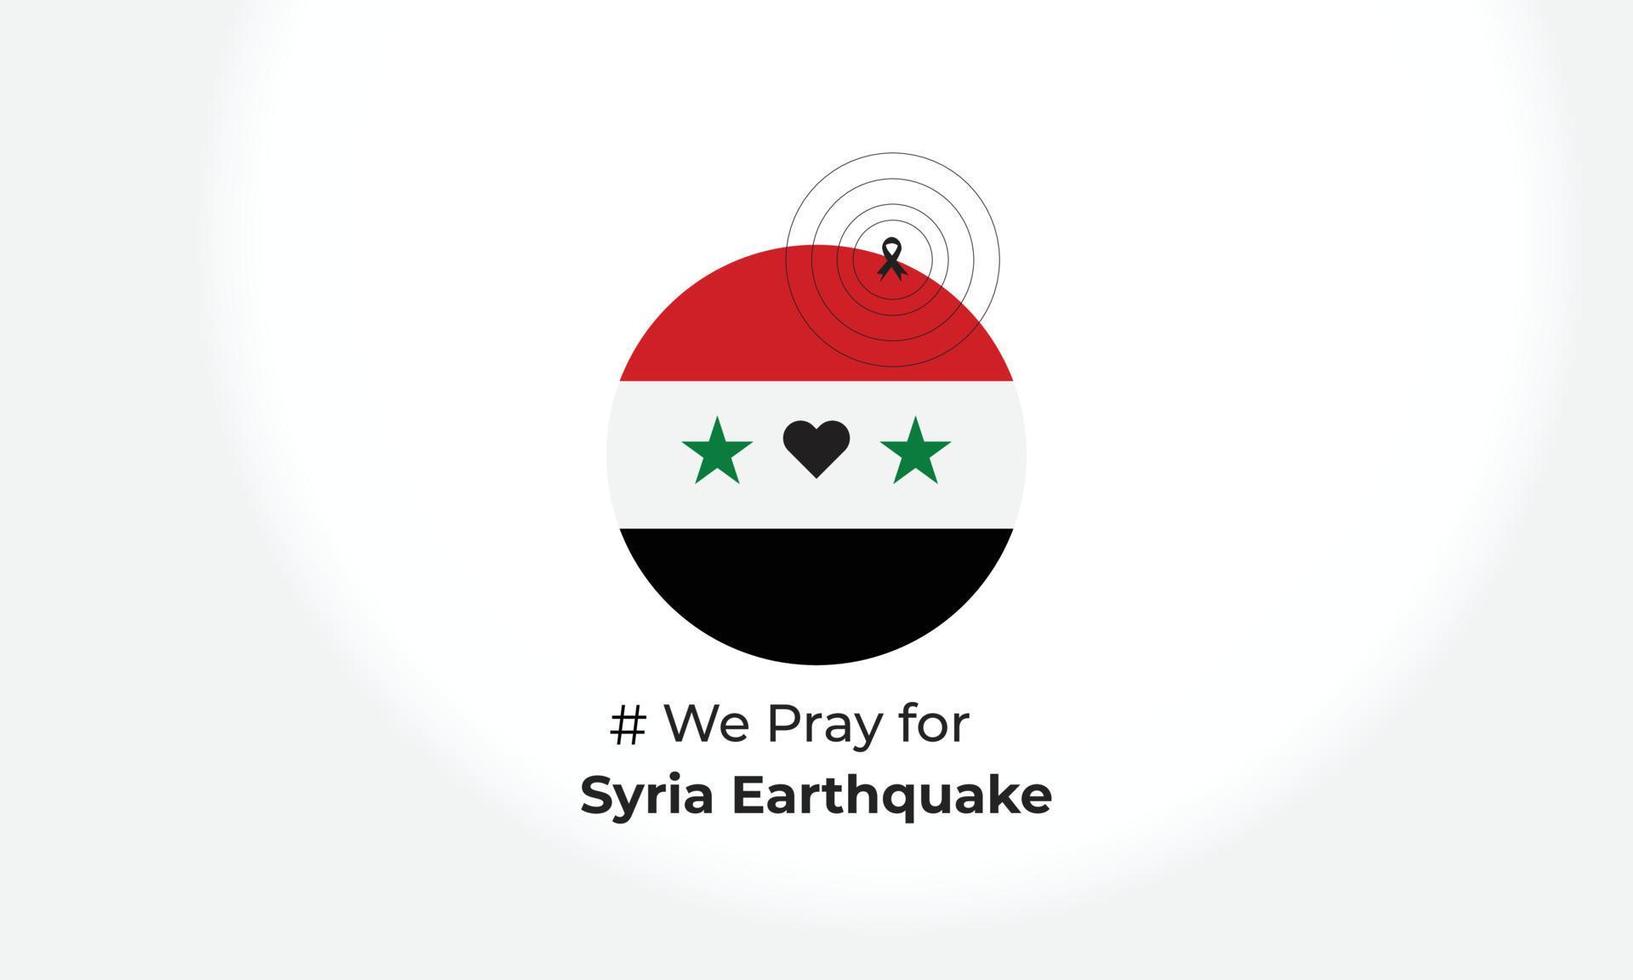 be för syrien jordbävning syrien nationell flagga och Karta illustration jordbävning tragedi i syrien bakgrund. syrien jordbävning katastrof februari 5, 2023 vektor